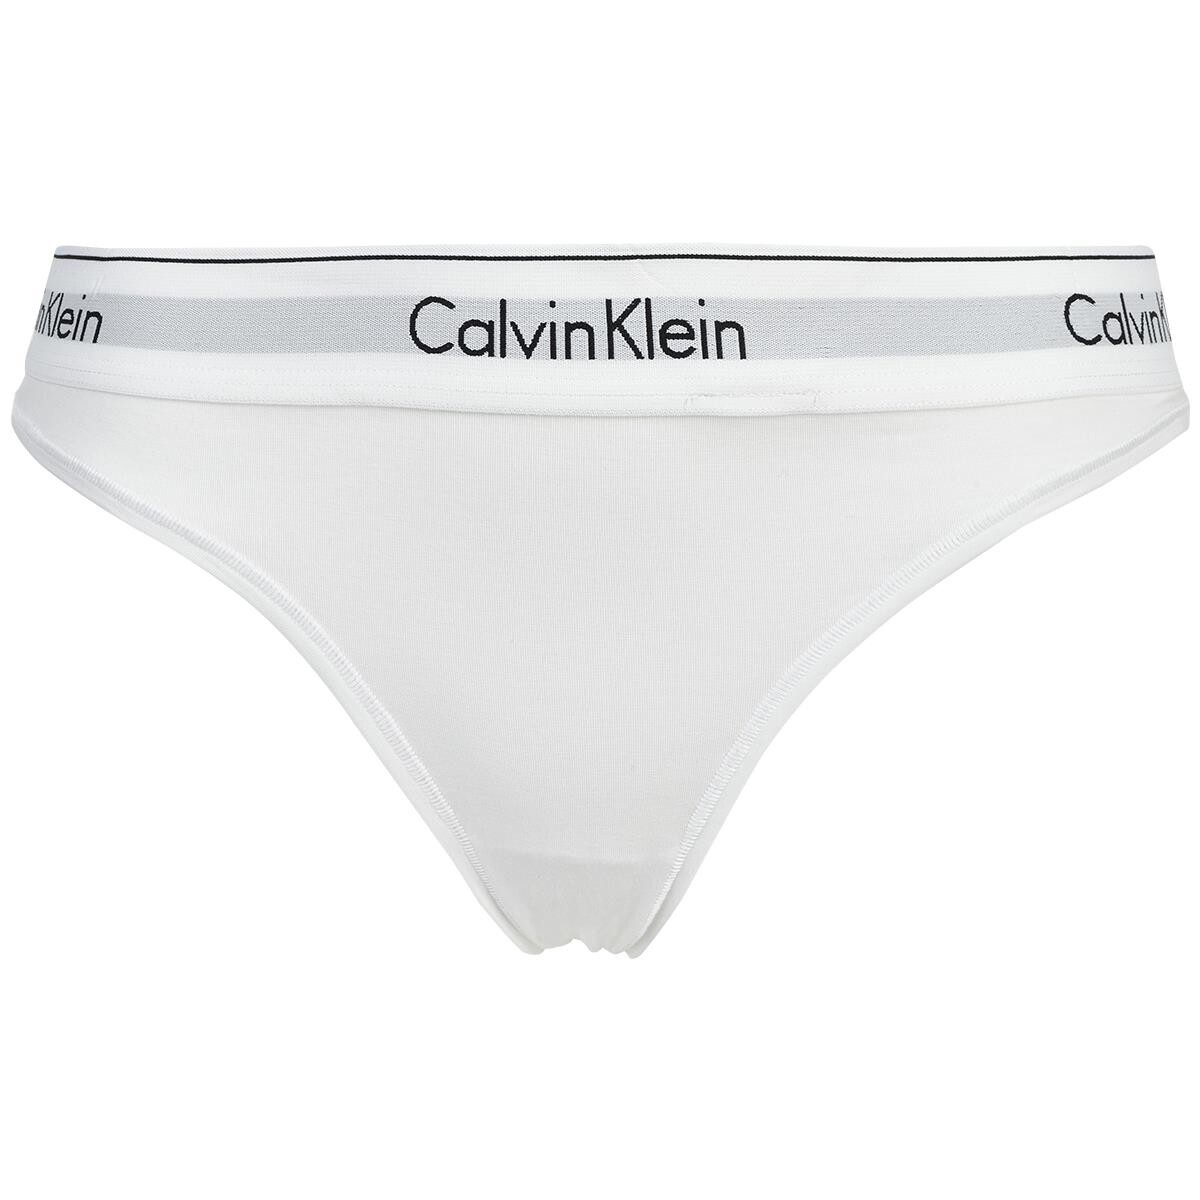 døråbning Trin Skygge Calvin Klein til kvinder • Shop dine favoritter på emci.dk